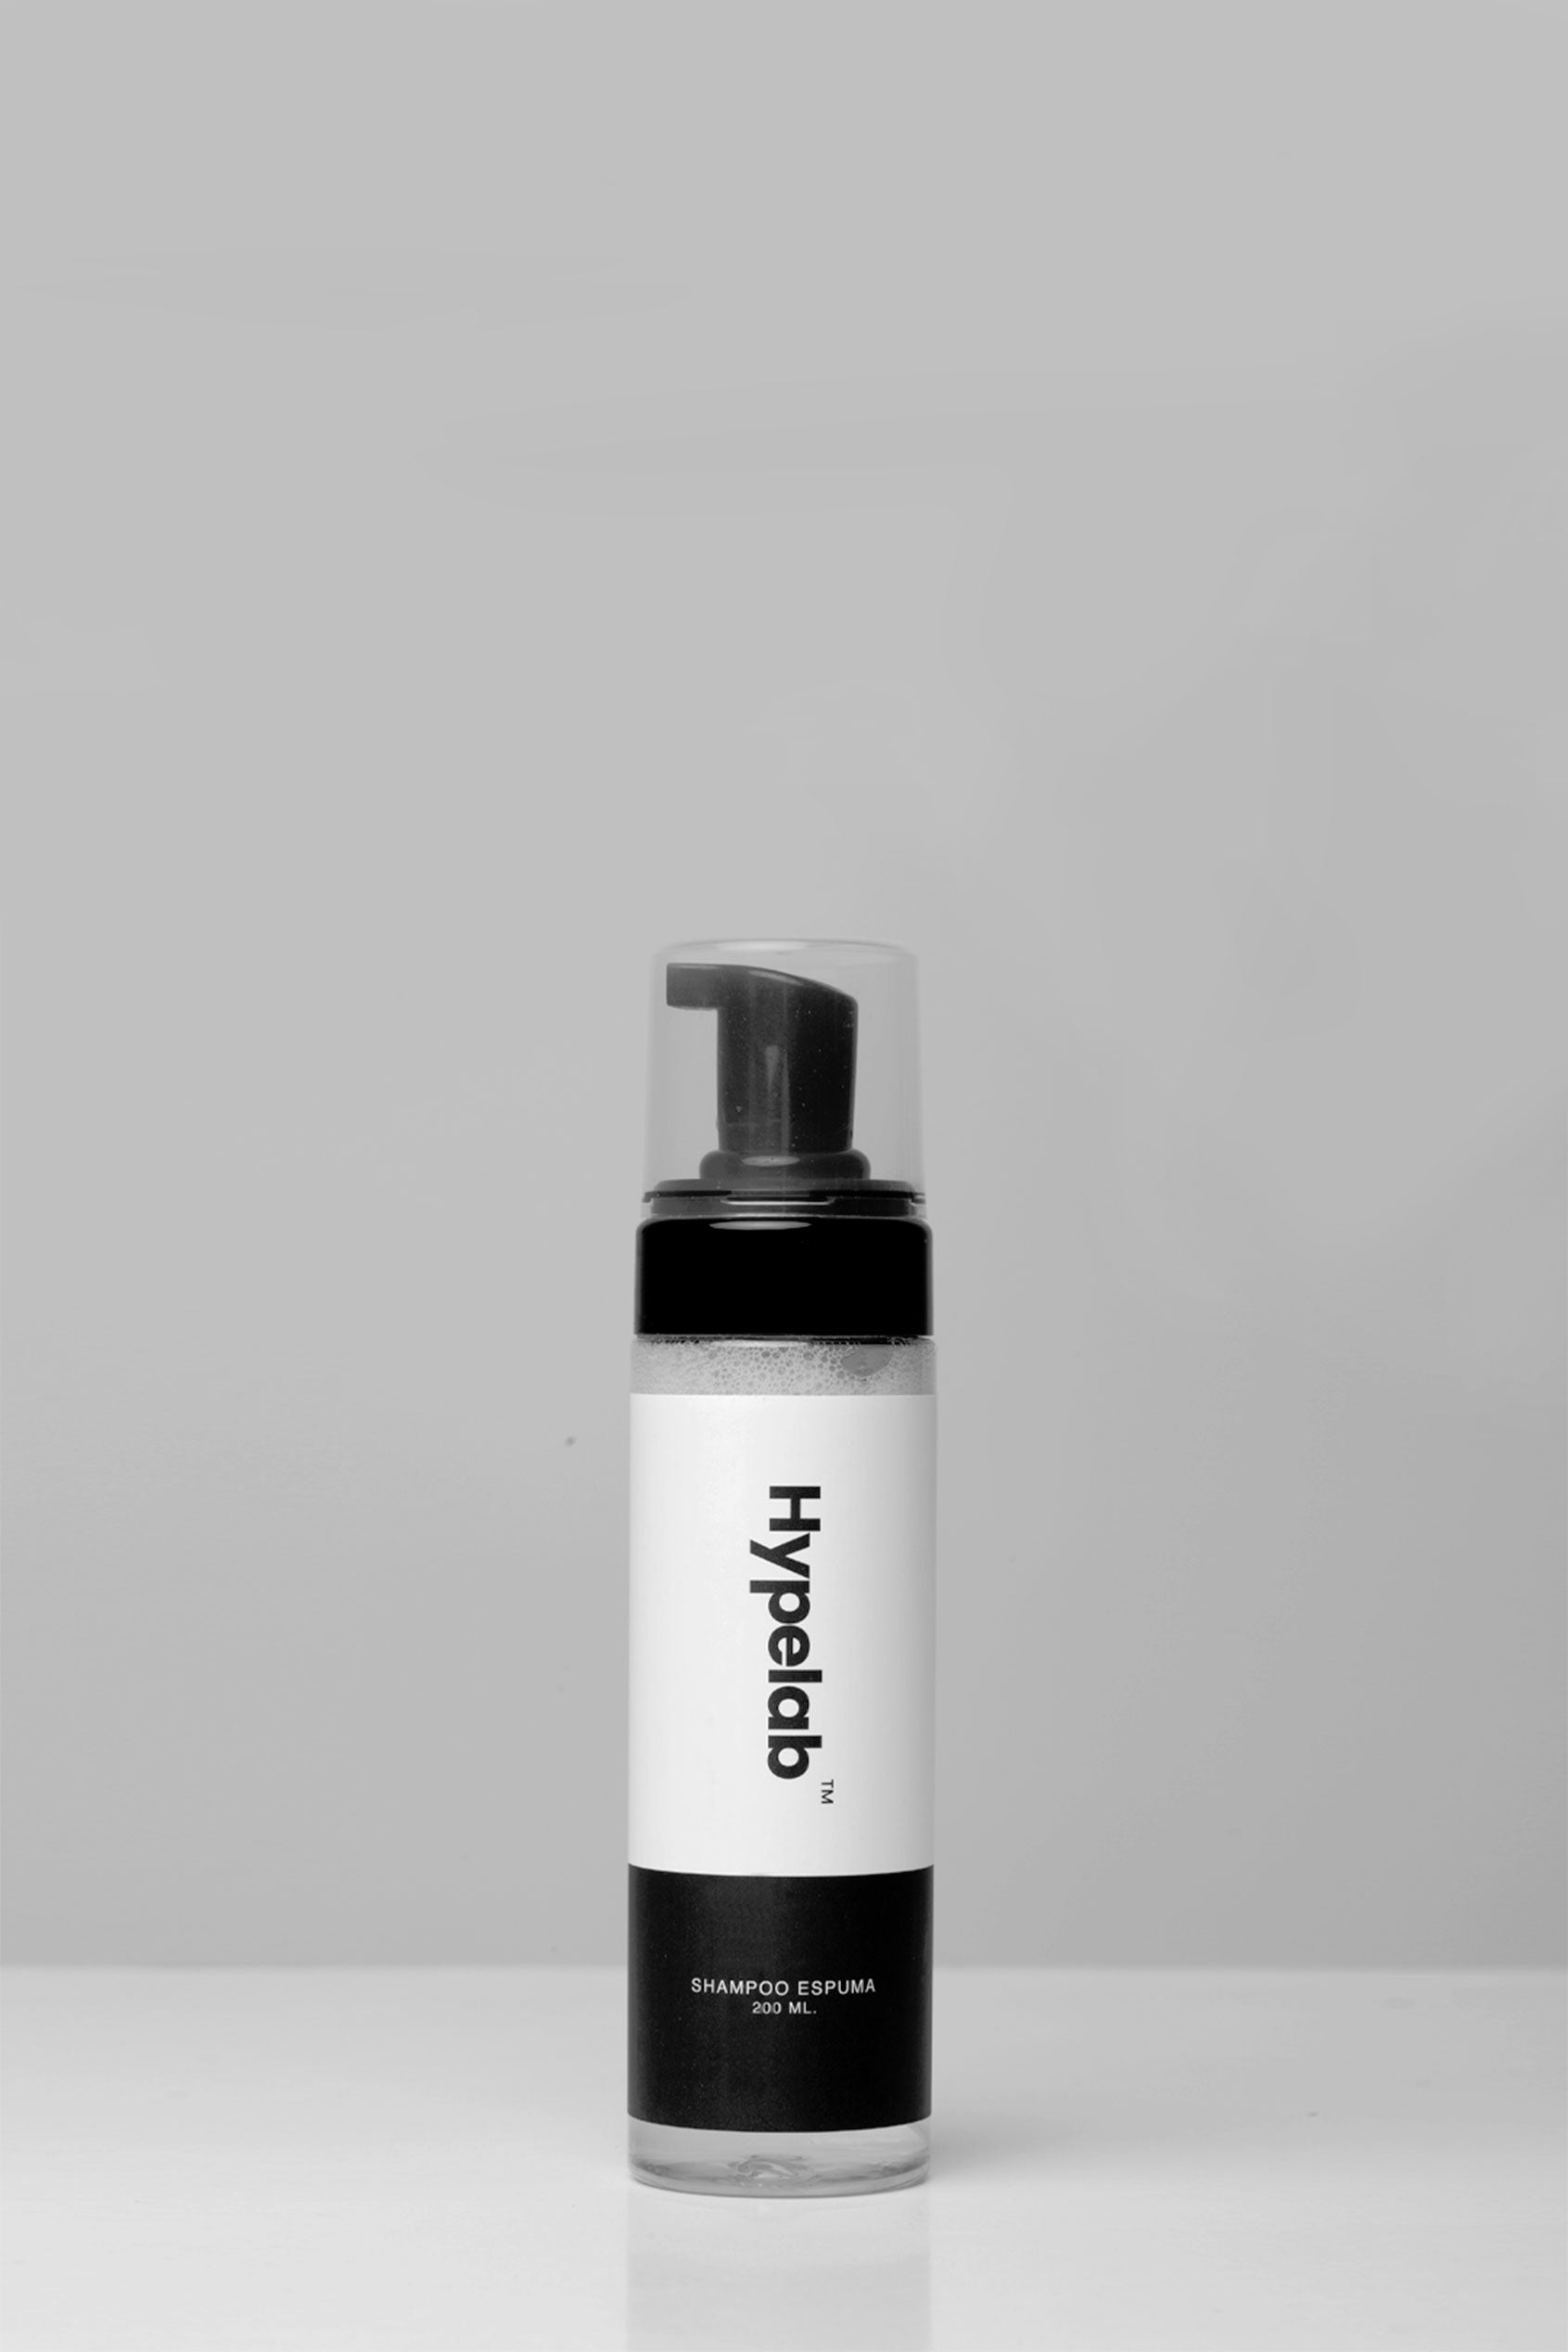 Shampoo Espuma HYPELAB